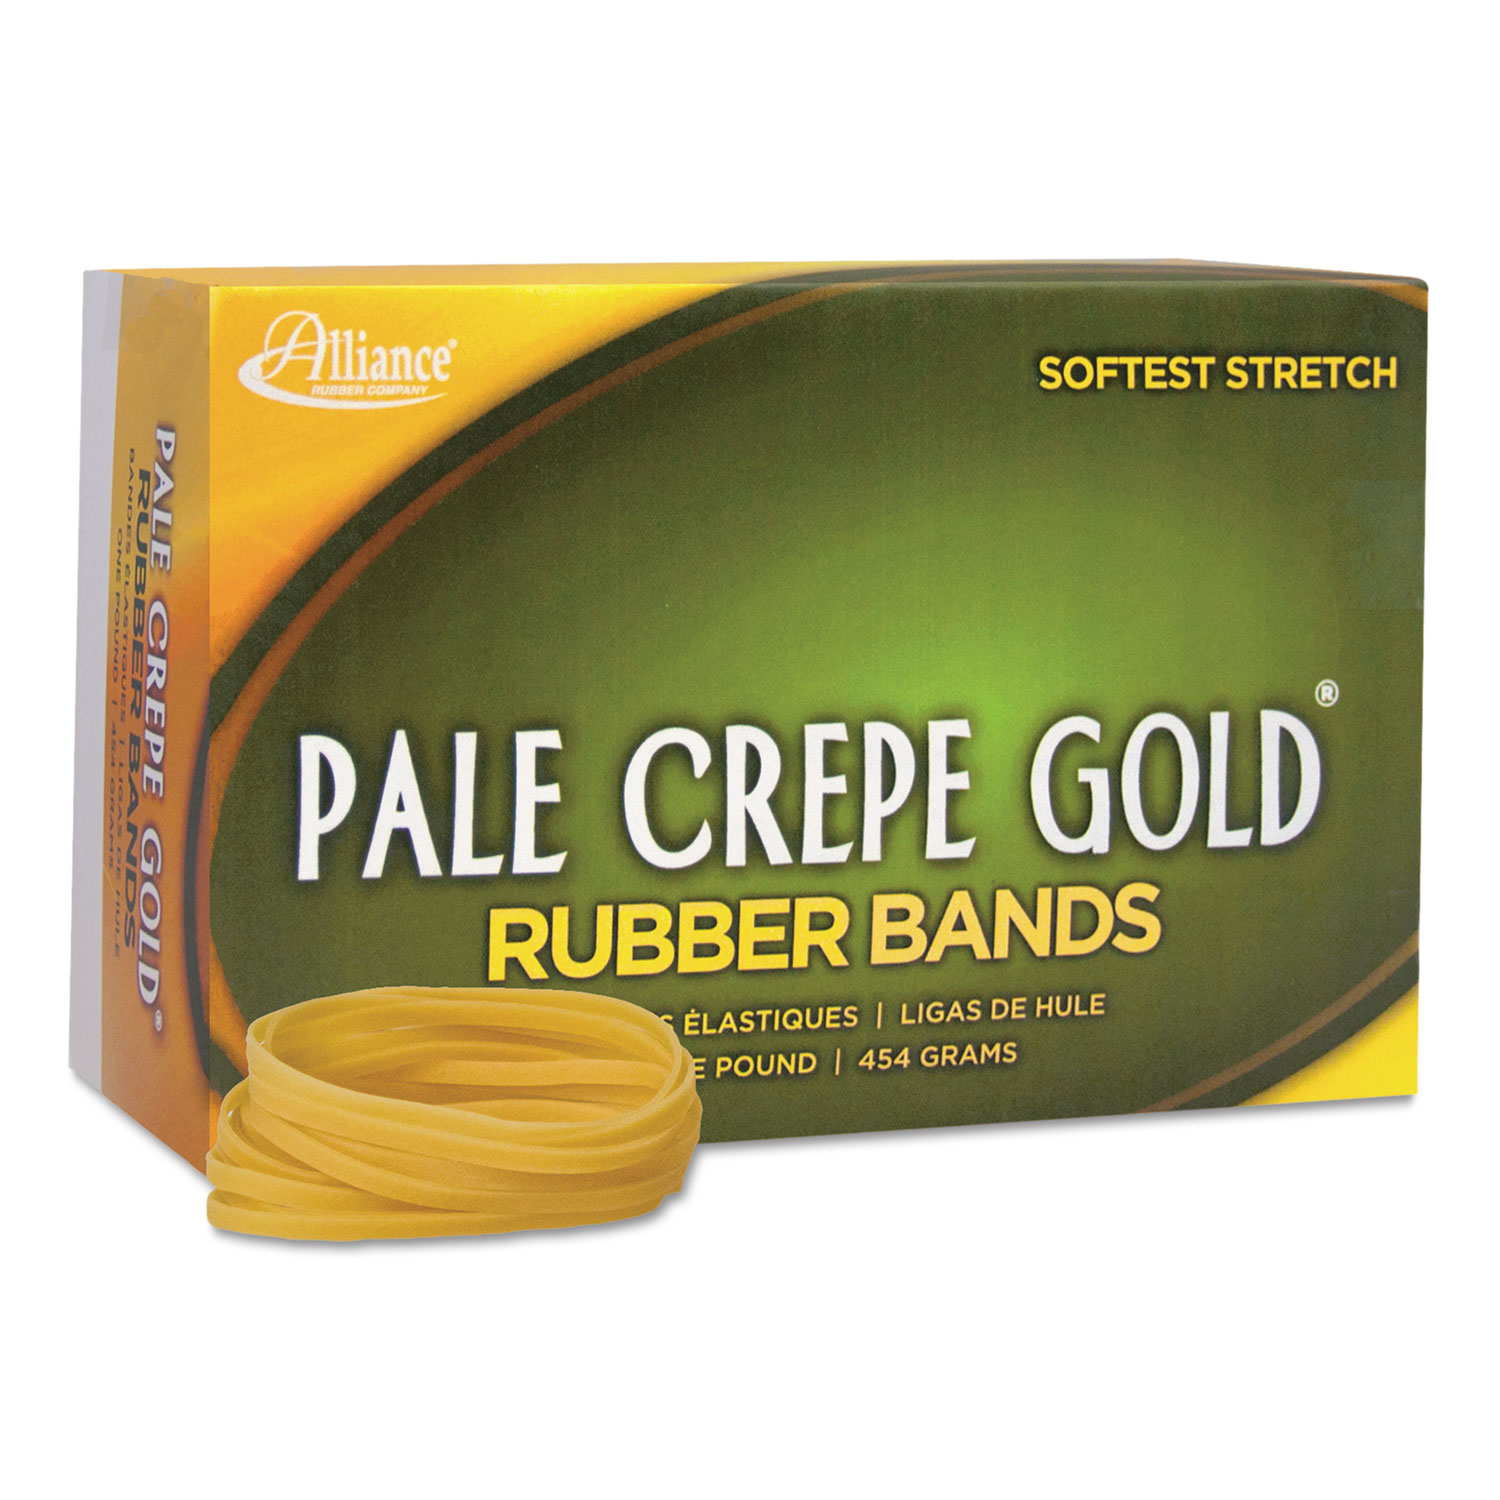 Pale Crepe Gold Rubber Bands, Sz. 32, 3 x 1/8, 1lb Box